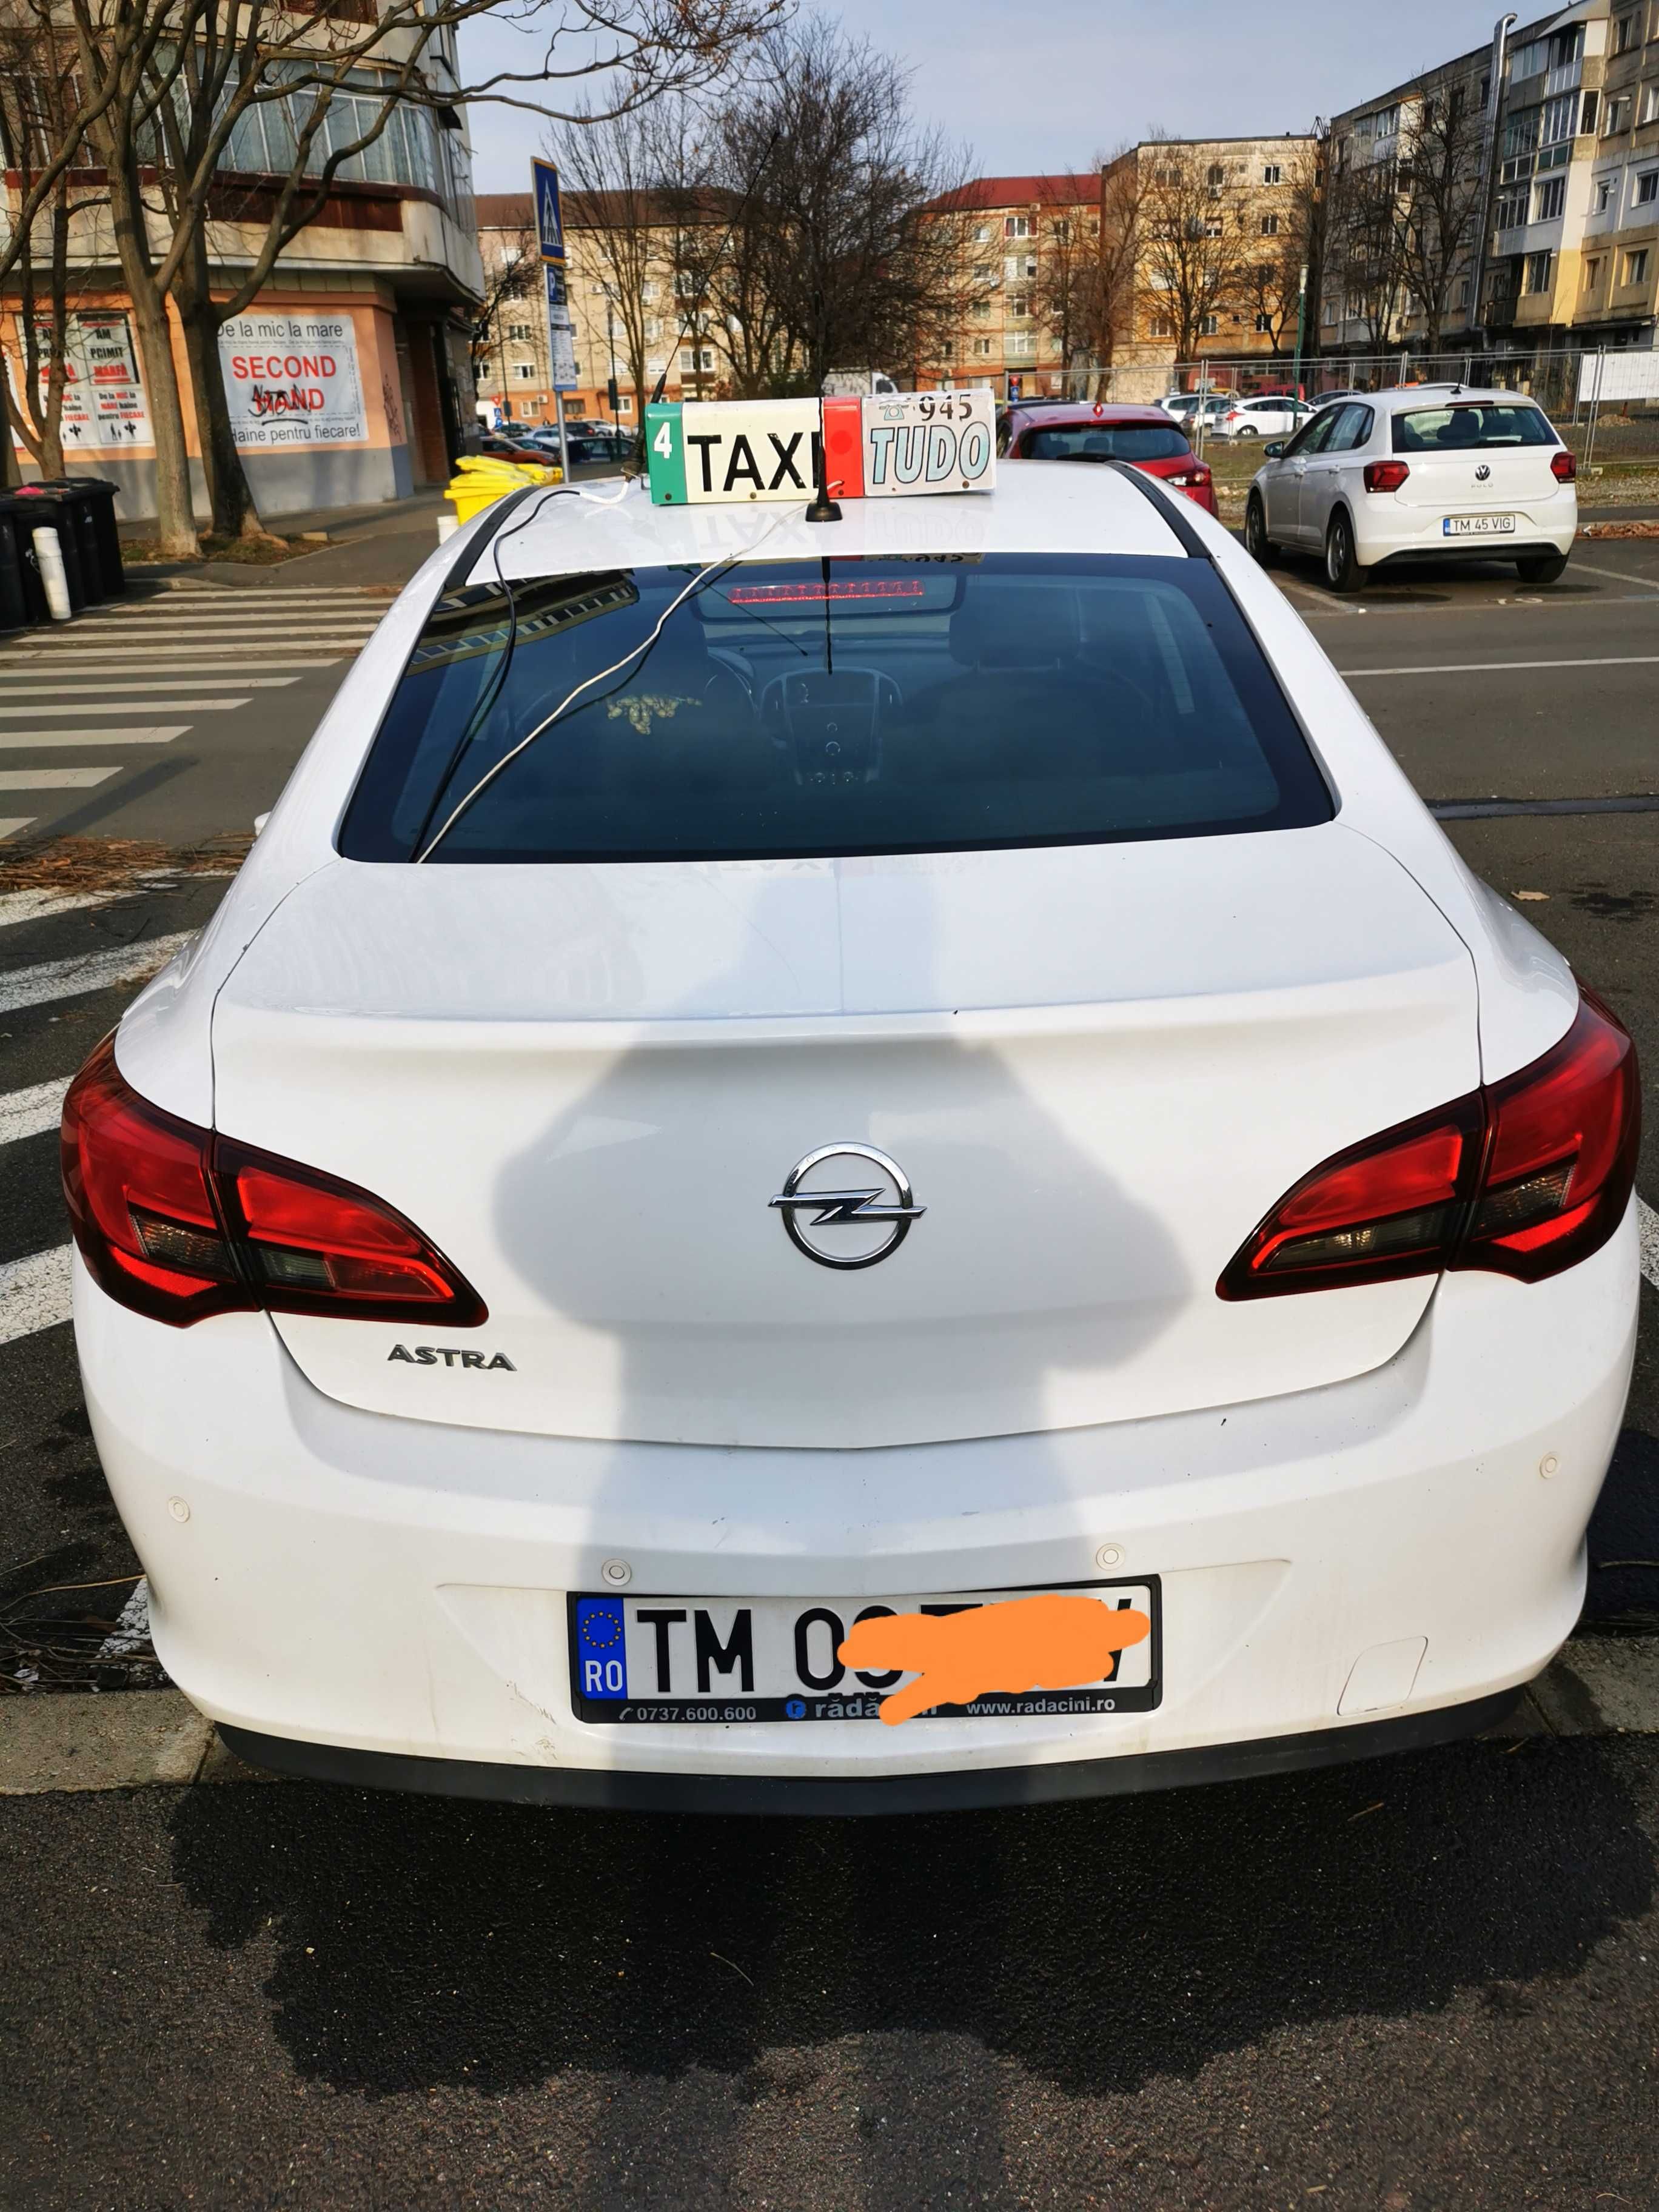 Autorizatie, licență taxi, Timisoara